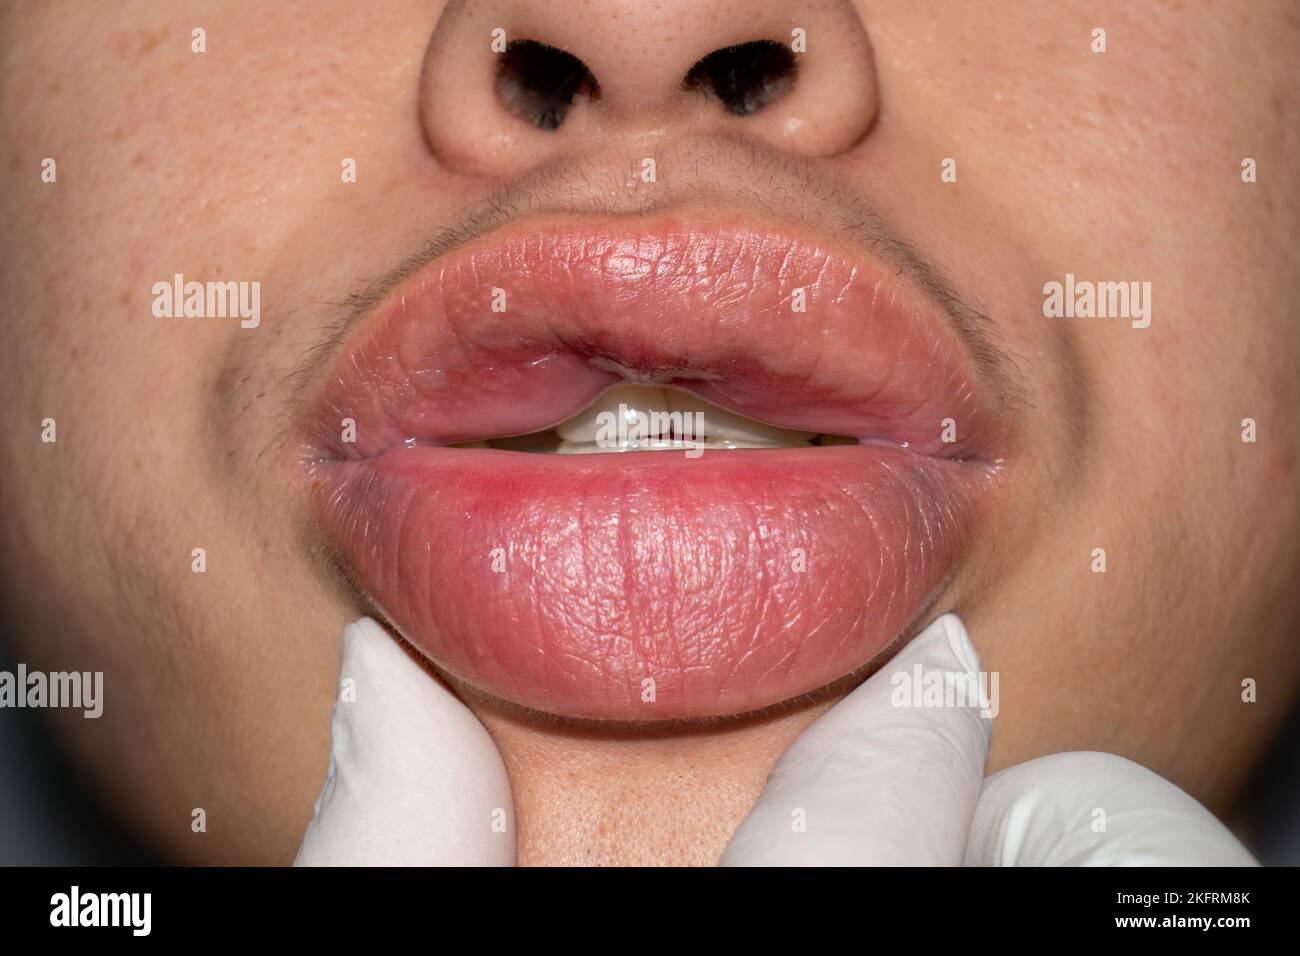 Labbra gonfie immagini e fotografie stock ad alta risoluzione - Alamy